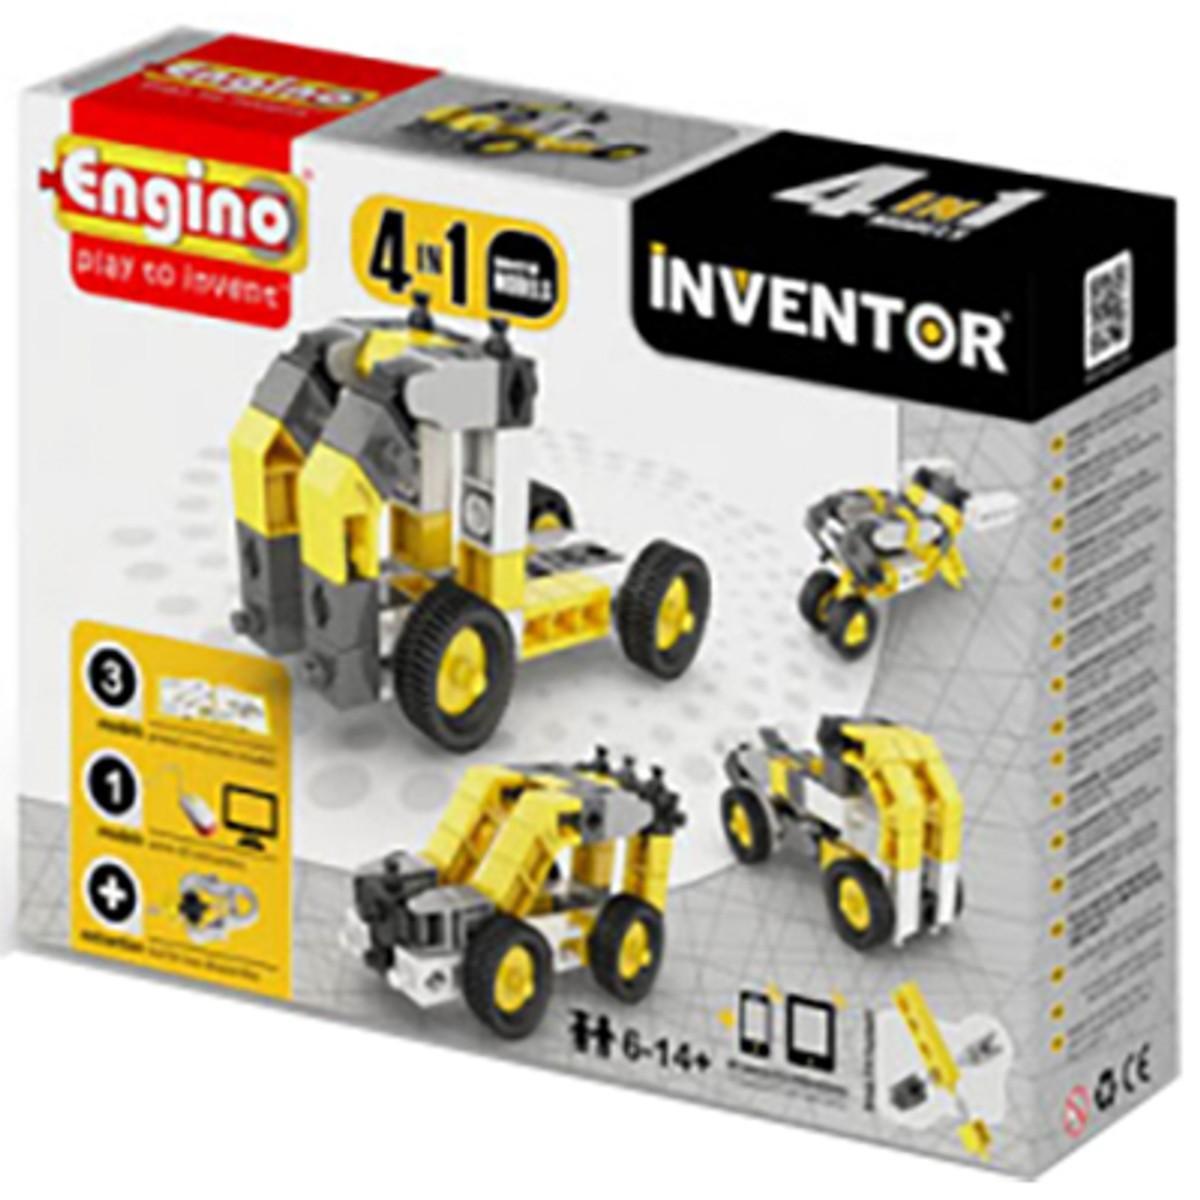 Đồ chơi Mô hình Engino Inventor - Xe công nghiệp M4 0434